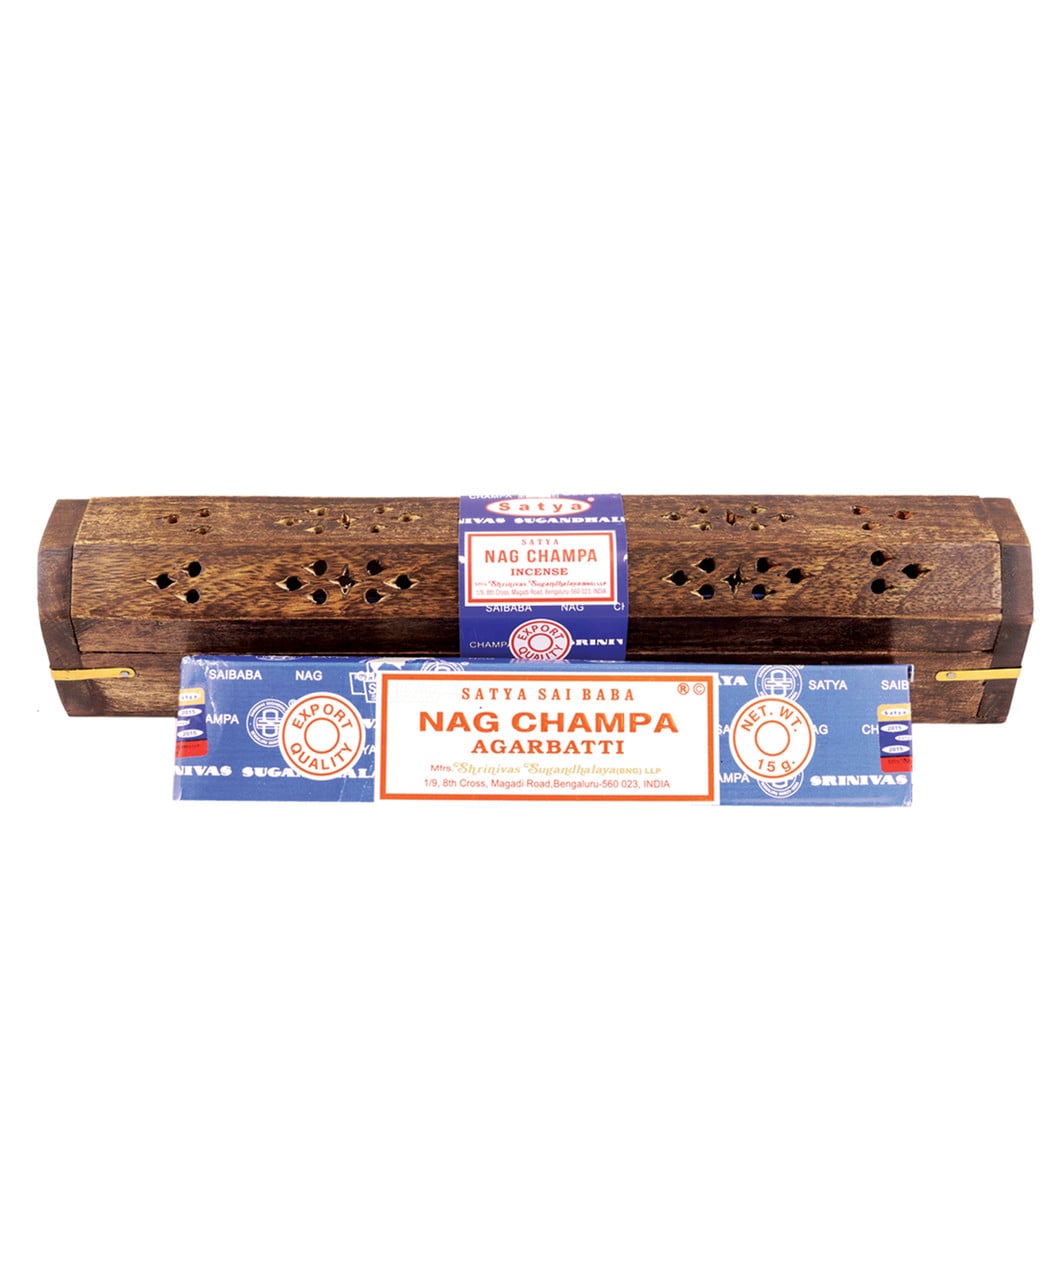 Nag Champa Incense Box